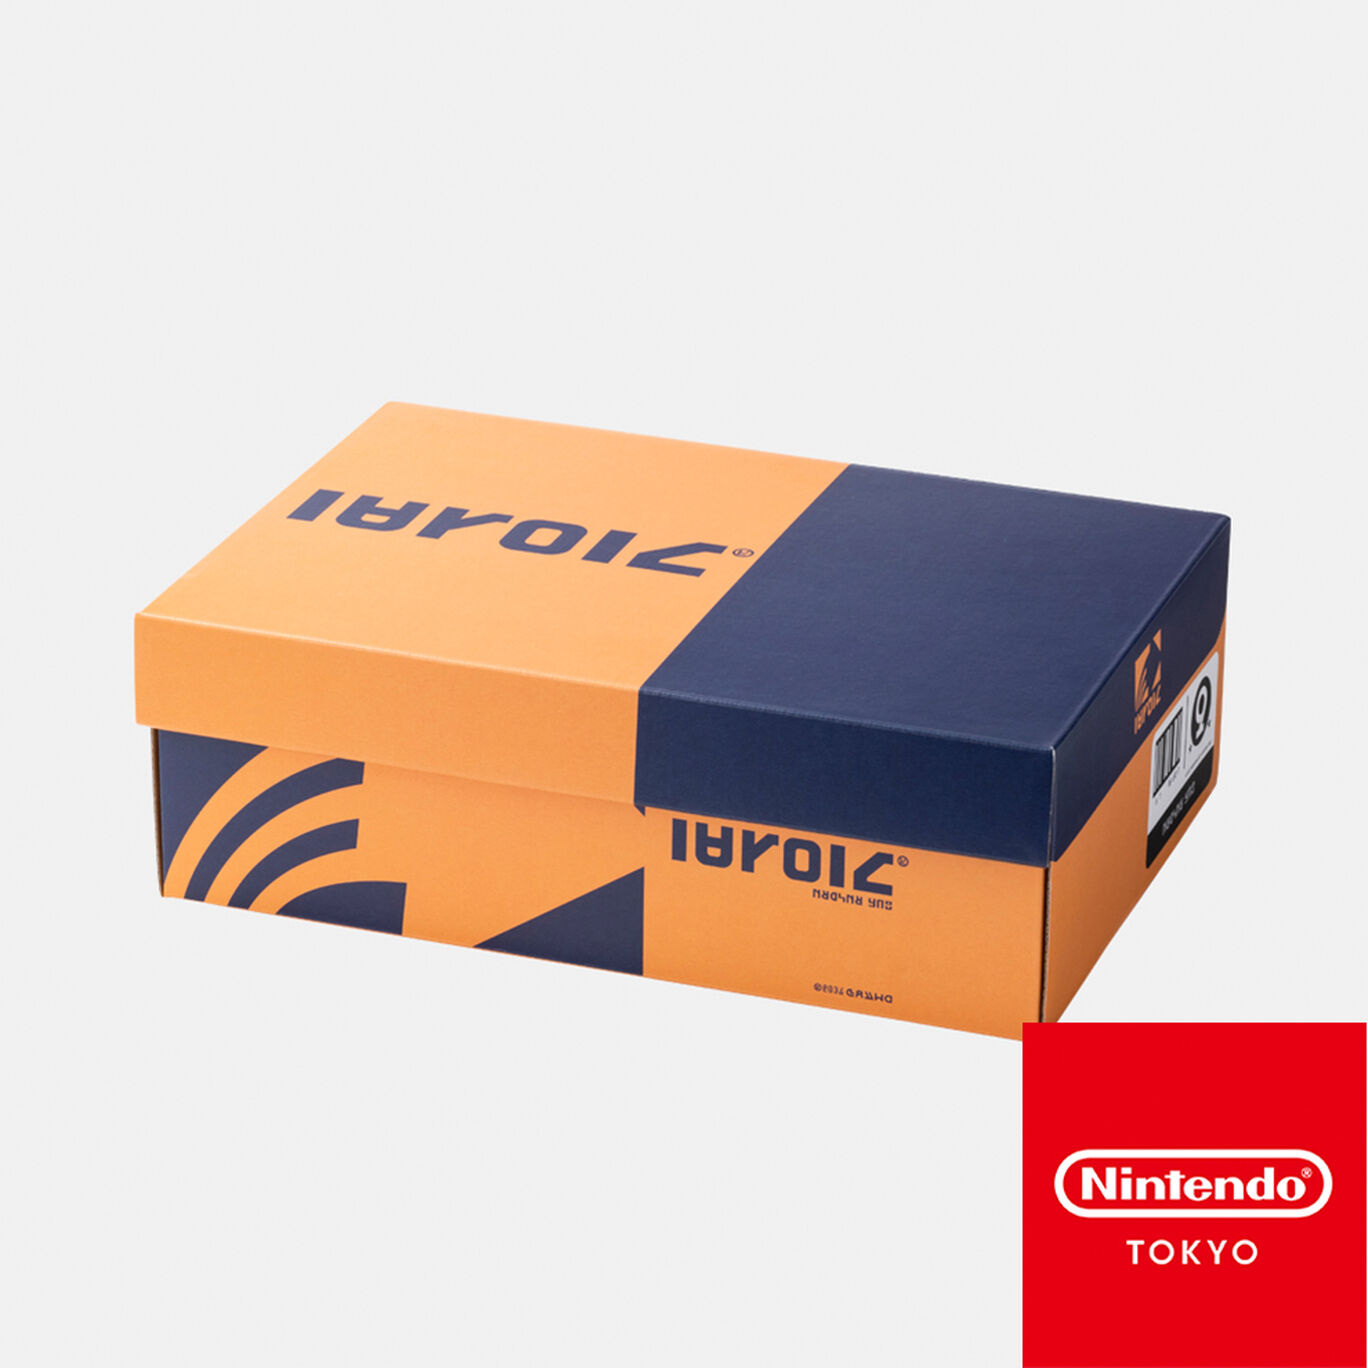 シューズボックス風収納BOX CROSSING SPLATOON D【Nintendo TOKYO/OSAKA取り扱い商品】